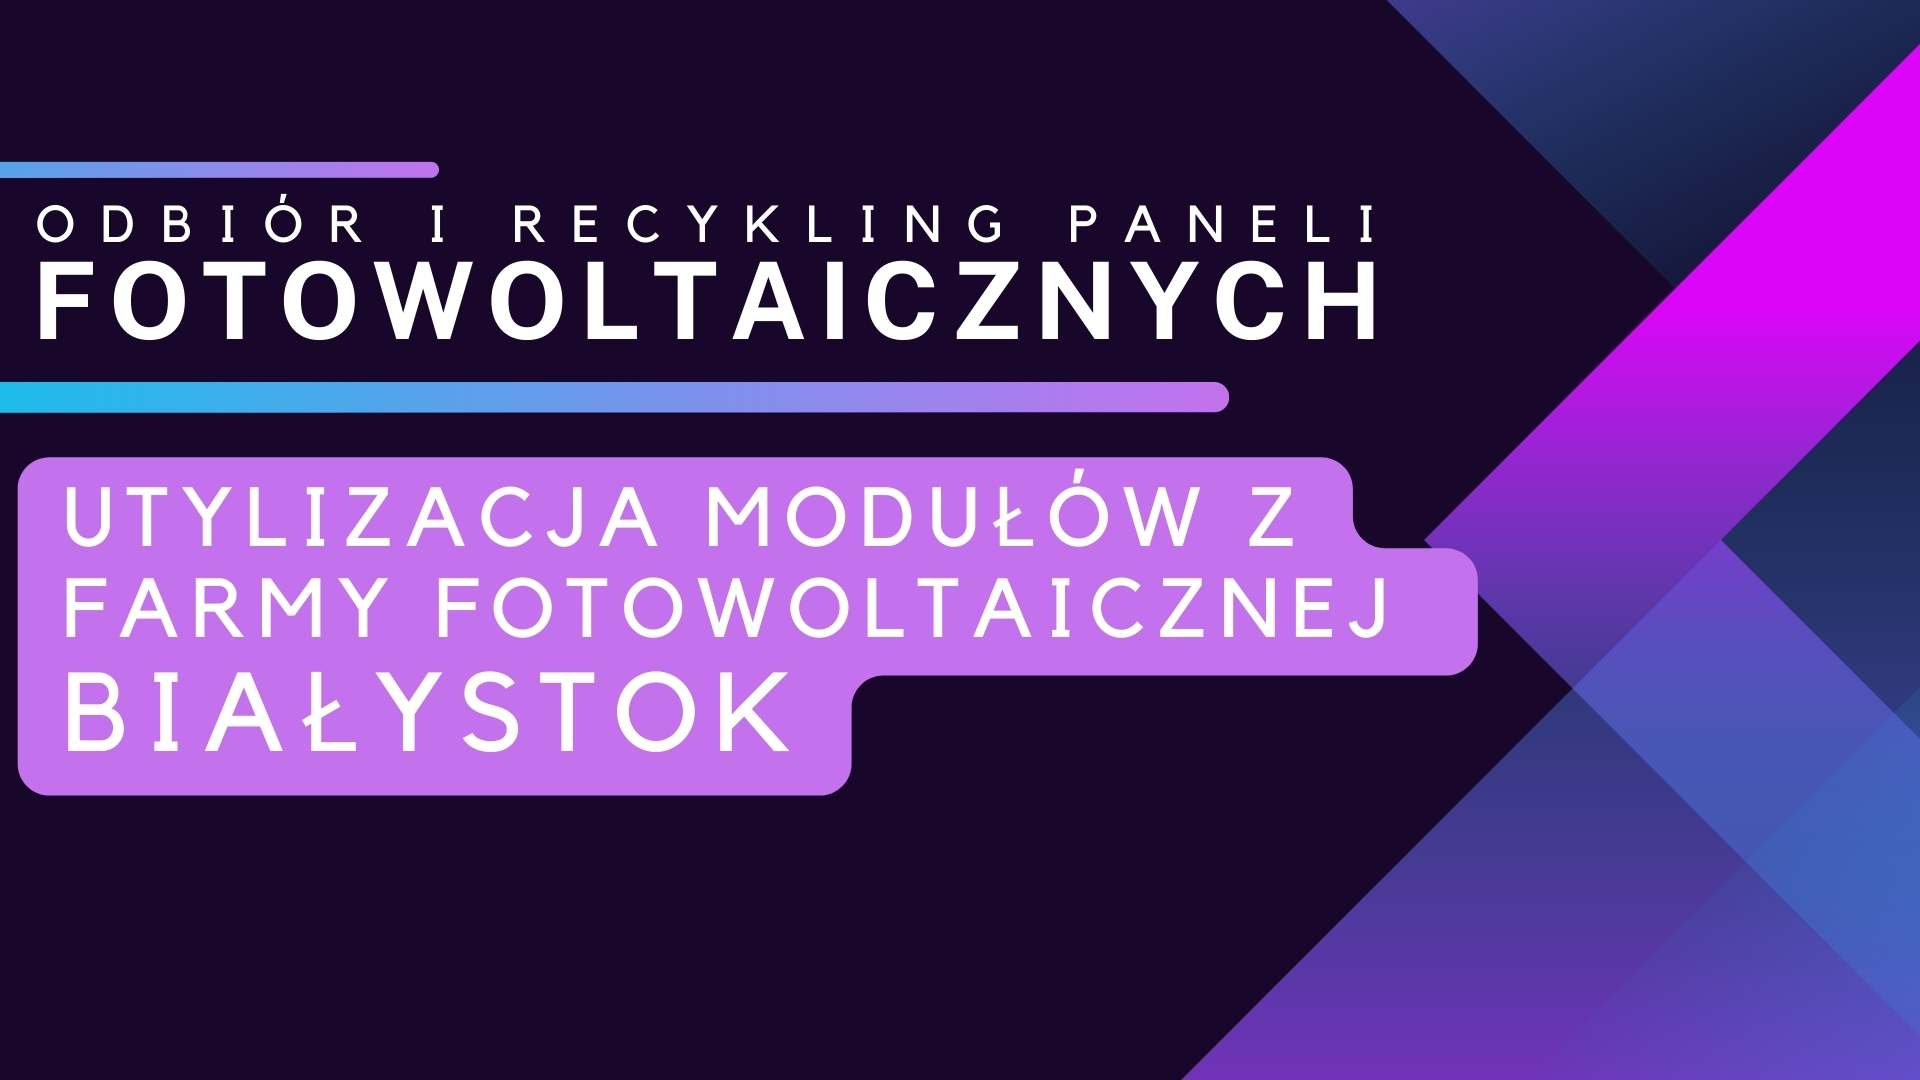 Utylizacja modułów z farmy fotowoltaicznej Białystok